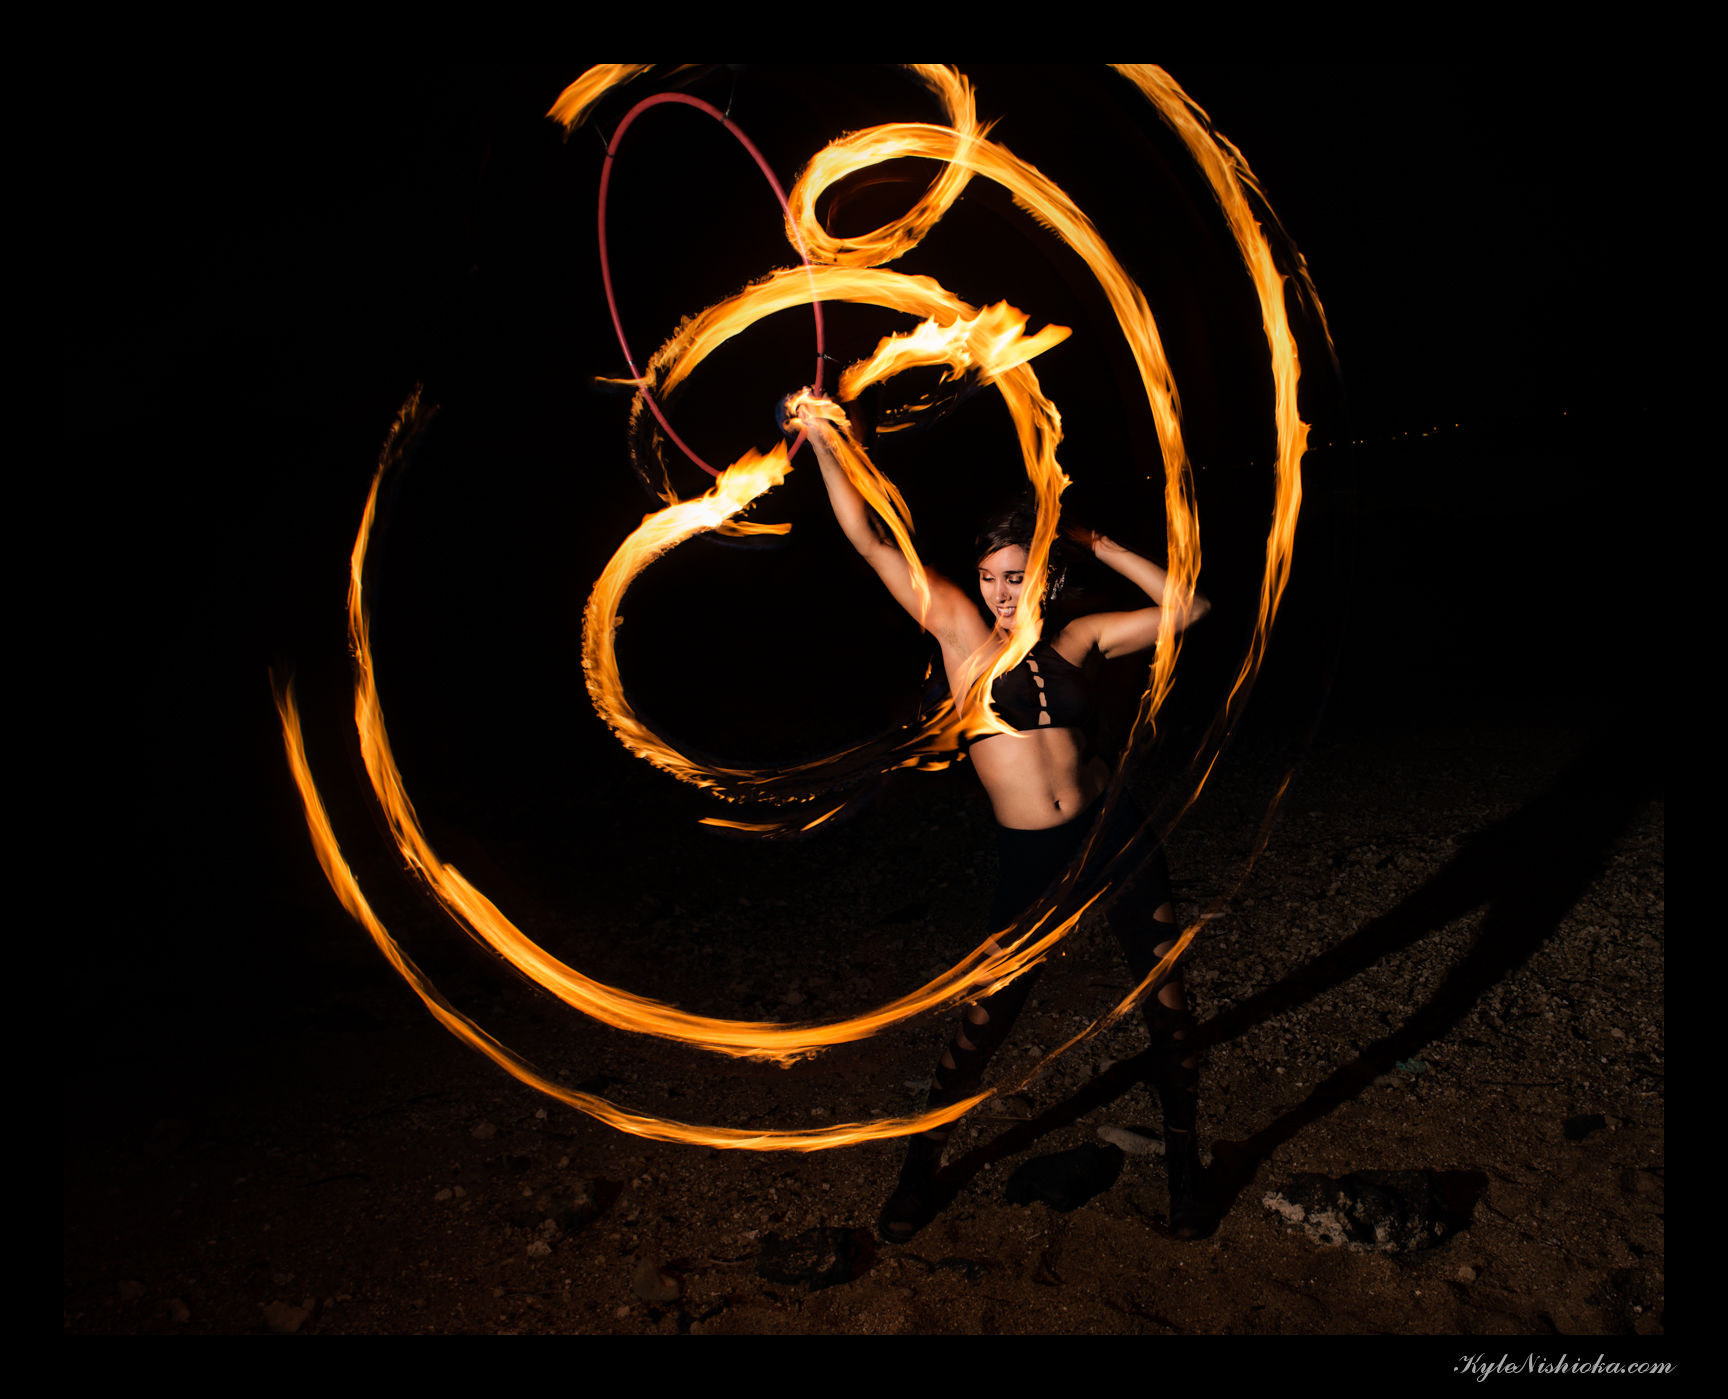 Nikon AF Nikkor 24mm F2.8D sample photo. Fire dancer alexa photography